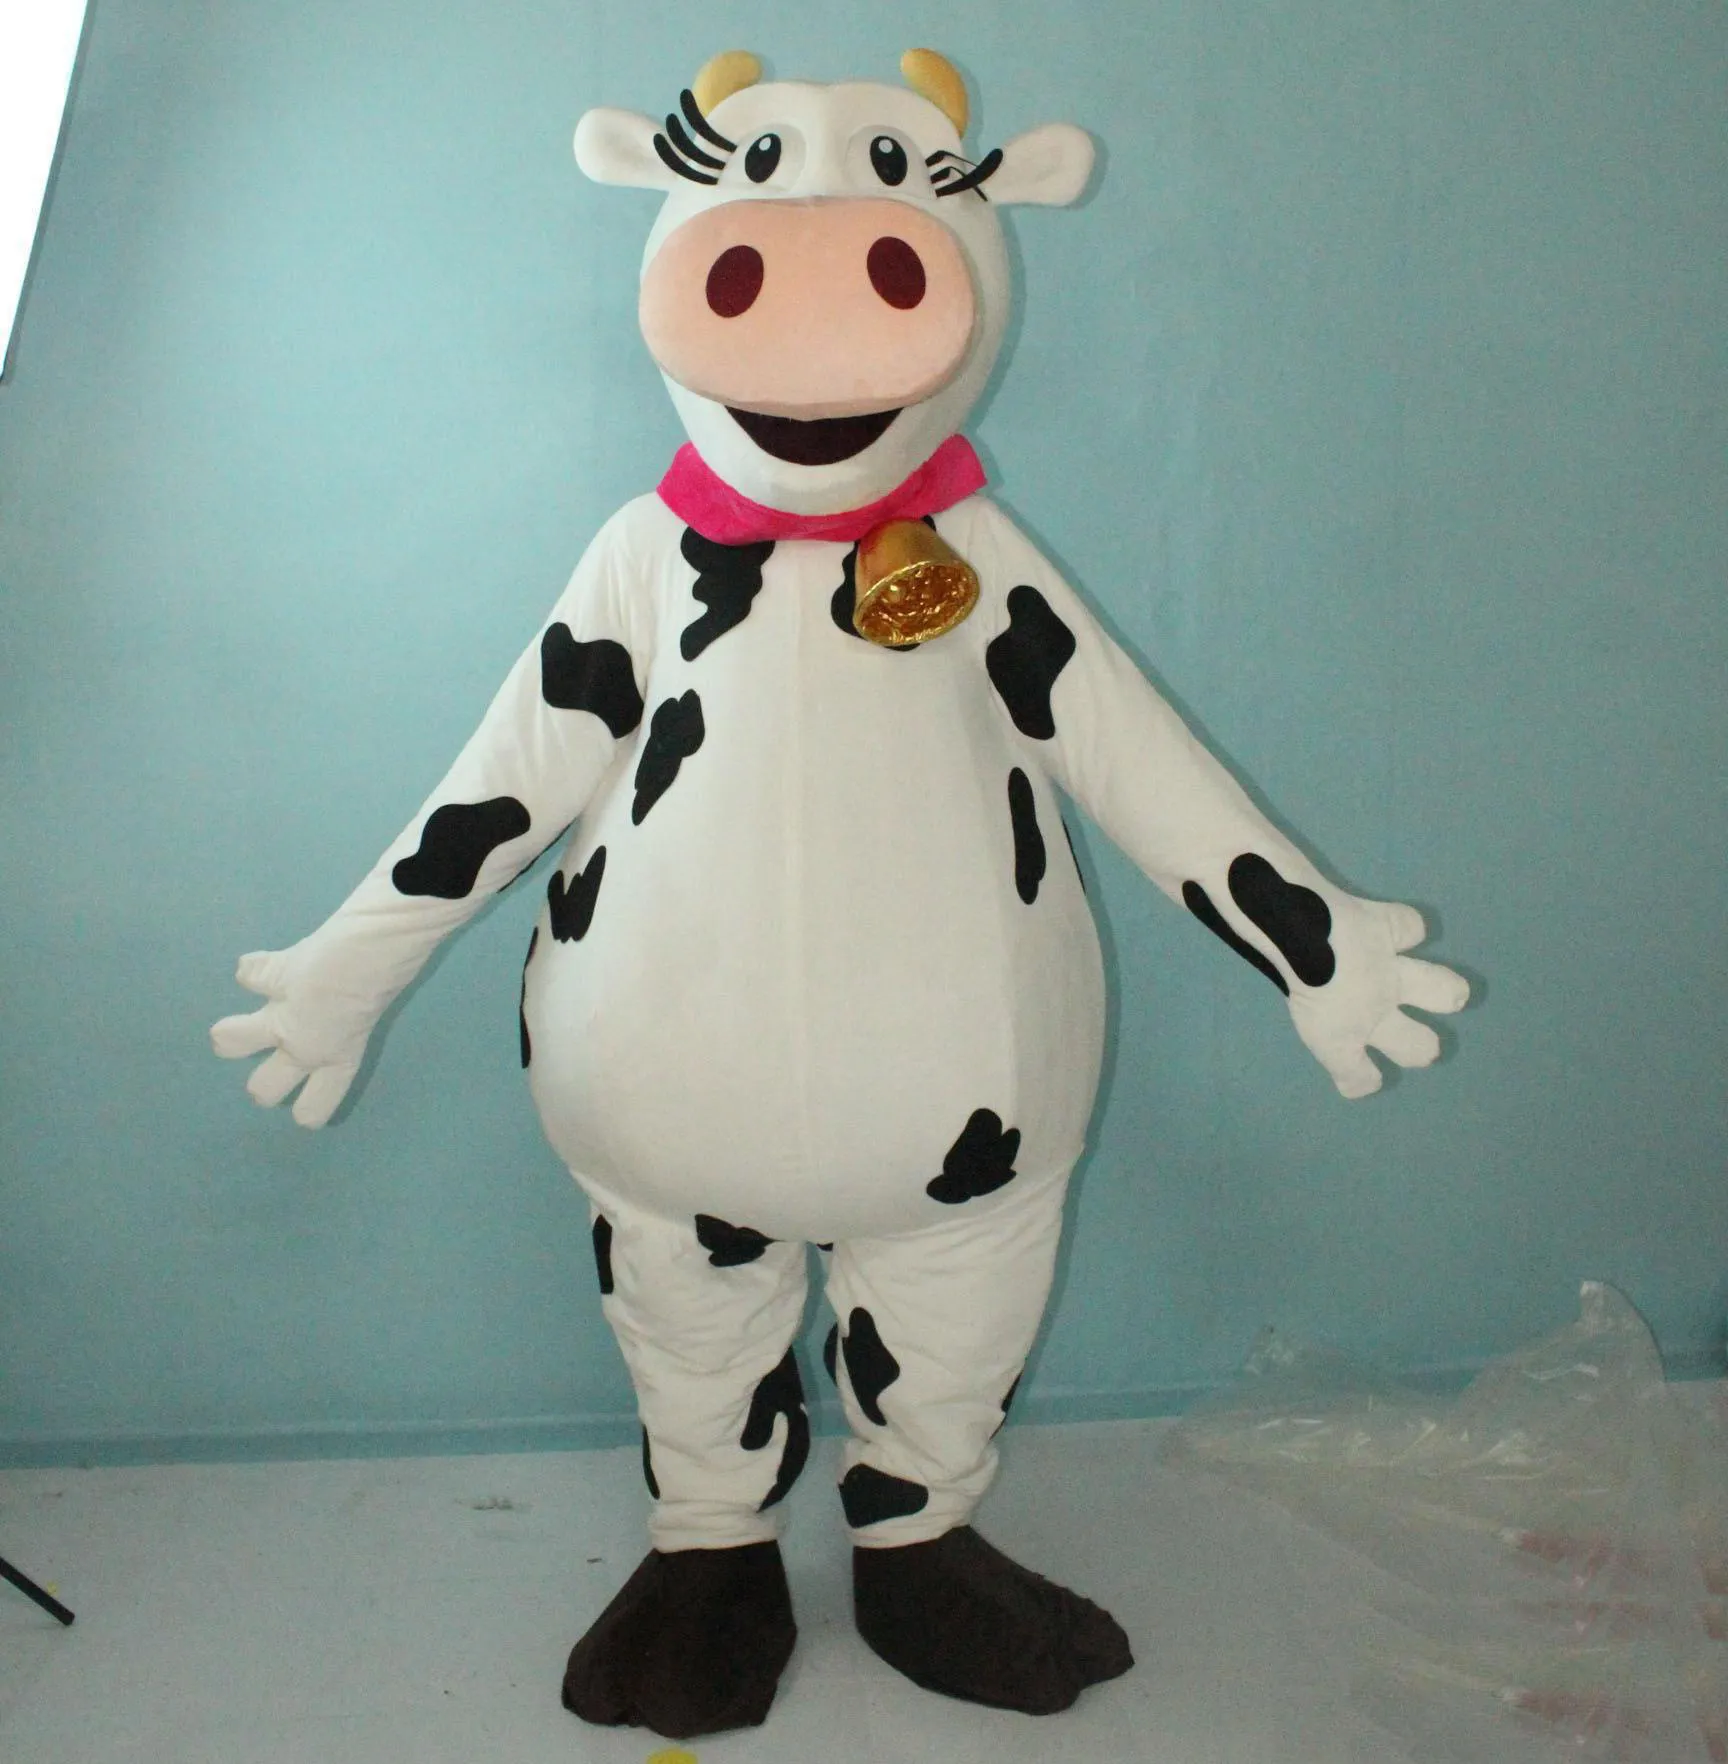 2019 завод парного молока коровы костюм талисман milkcow меховой костюм для взрослых в Wera